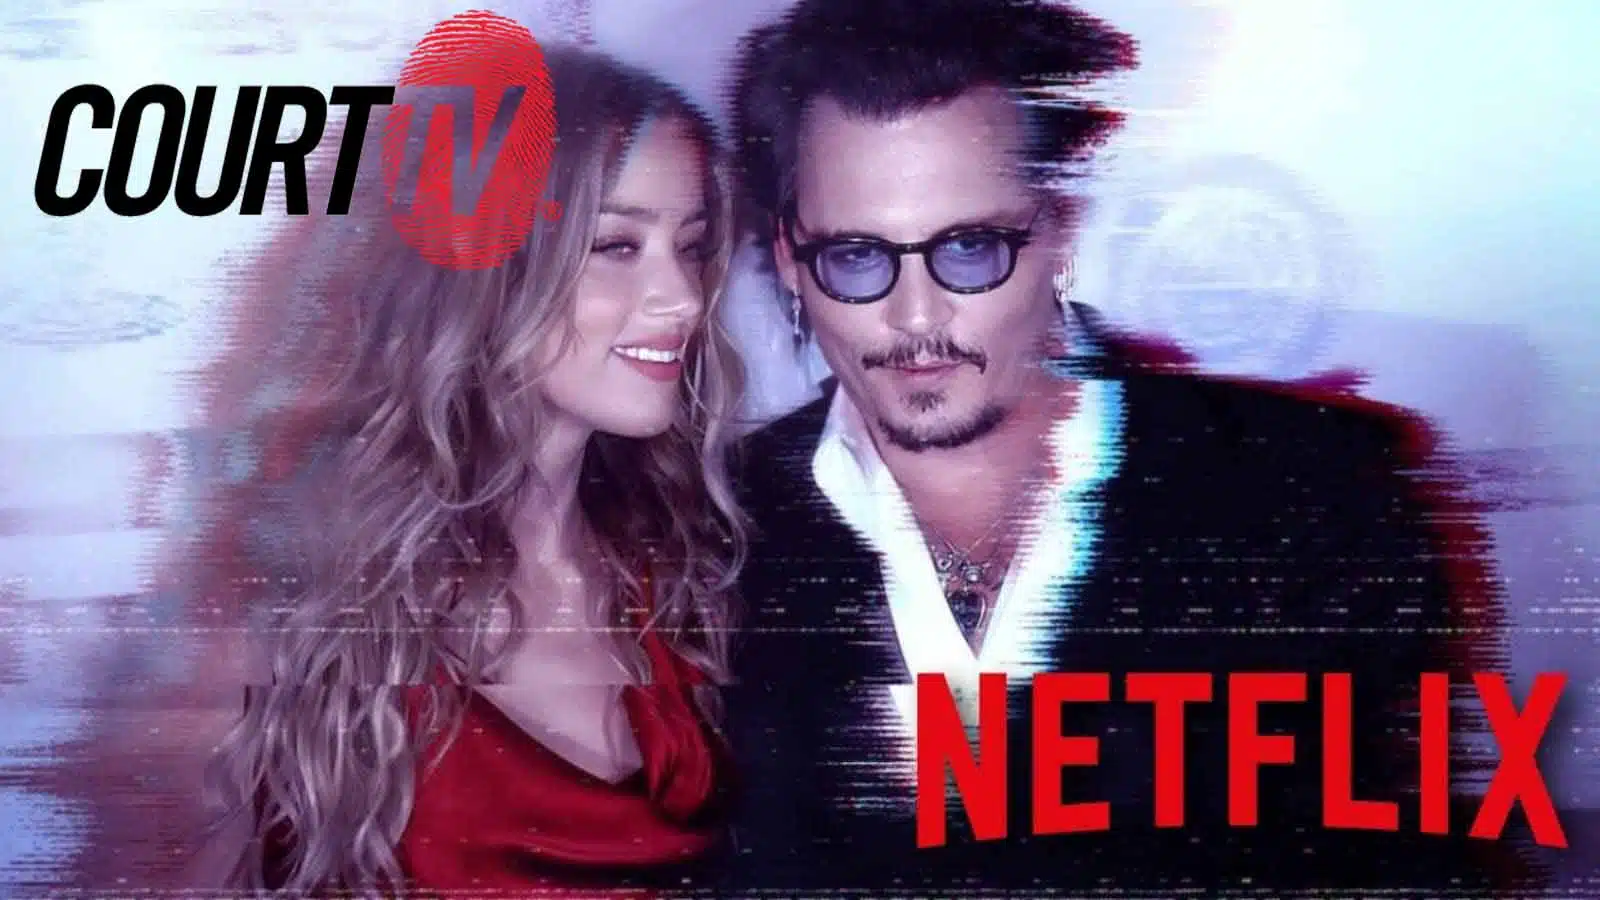 Court TV regresa internacionalmente con la miniserie sobre el juicio de Johnny Depp contra Amber Heard en Netflix